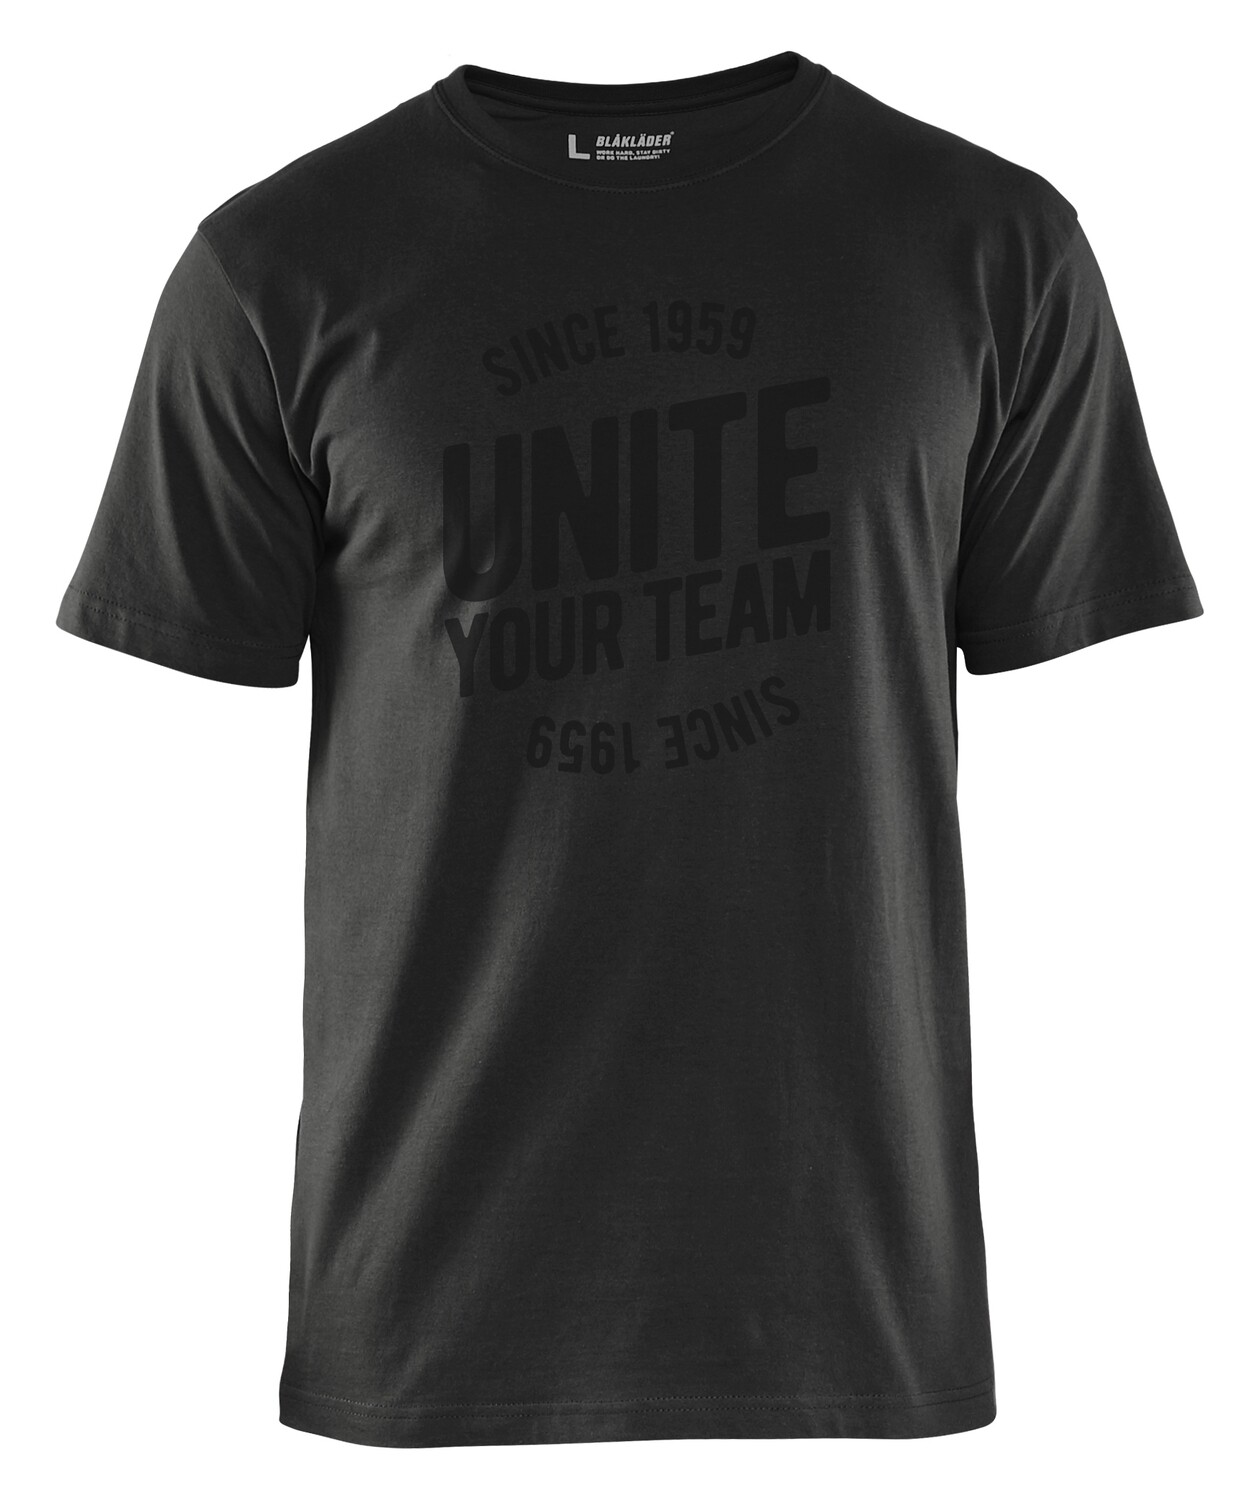 T-shirt UNITE - édition limitée